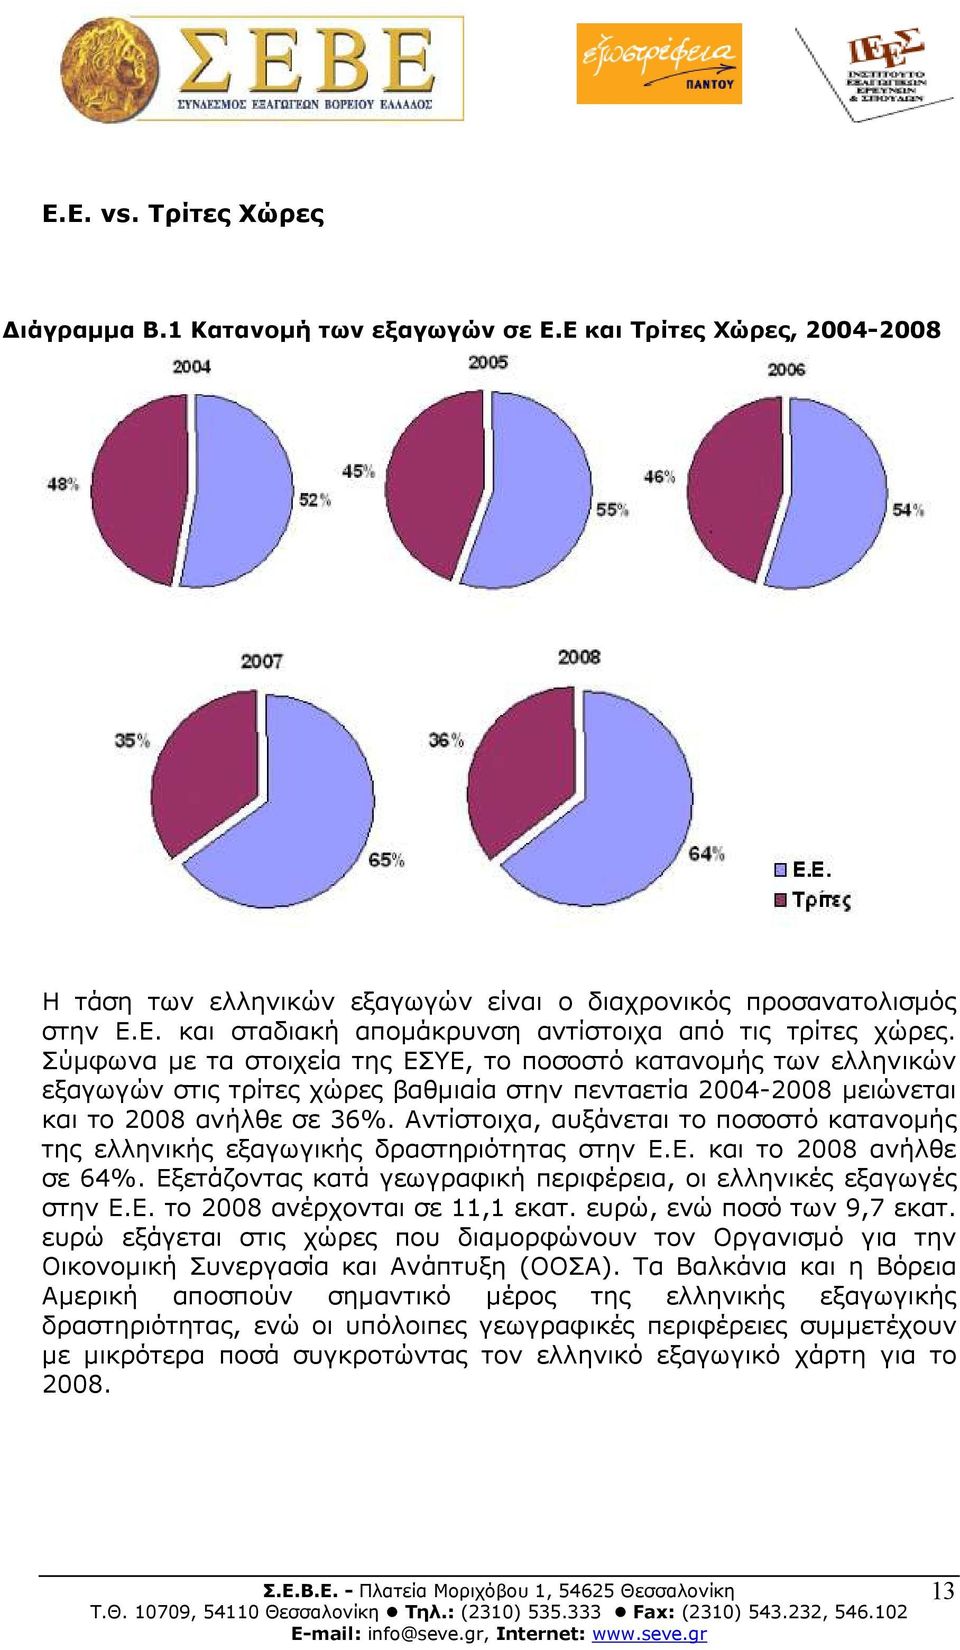 Αντίστοιχα, αυξάνεται το ποσοστό κατανοµής της ελληνικής εξαγωγικής δραστηριότητας στην Ε.Ε. και το 2008 ανήλθε σε 64%. Εξετάζοντας κατά γεωγραφική περιφέρεια, οι ελληνικές εξαγωγές στην Ε.Ε. το 2008 ανέρχονται σε 11,1 εκατ.